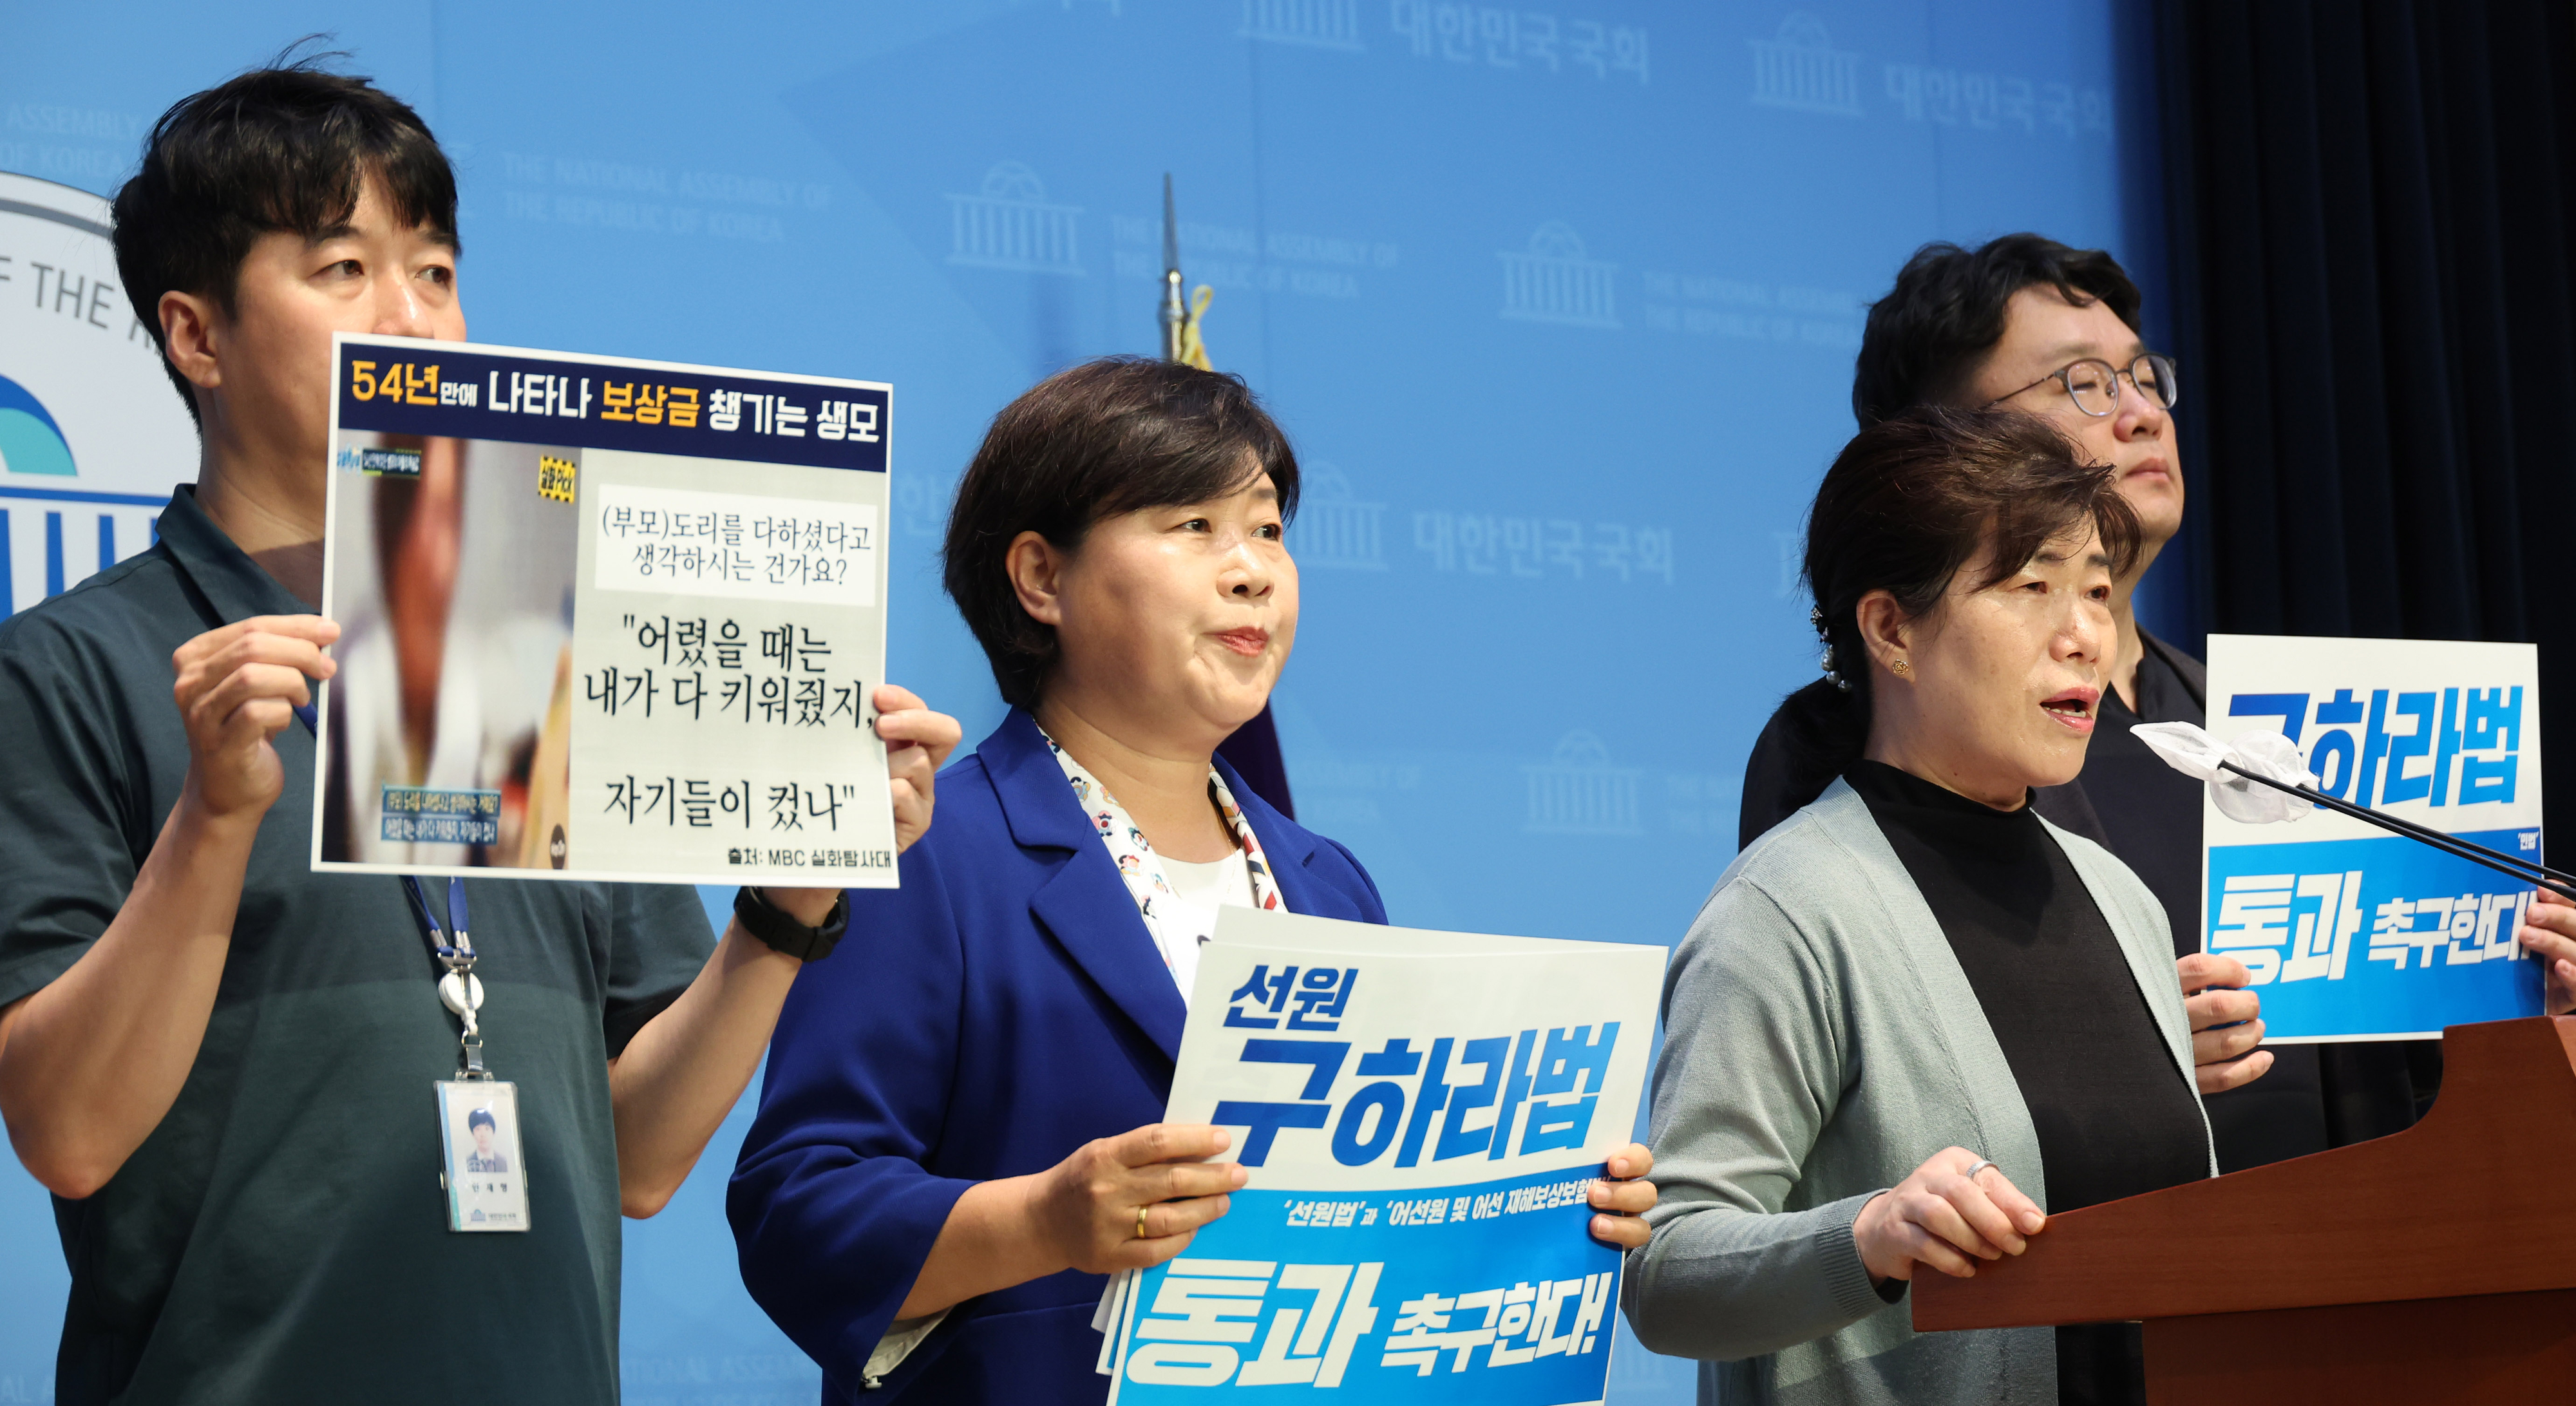 ‘선원구하라법 통과 촉구 기자회견’에서 발언하는 김종안씨 누나 김종선씨